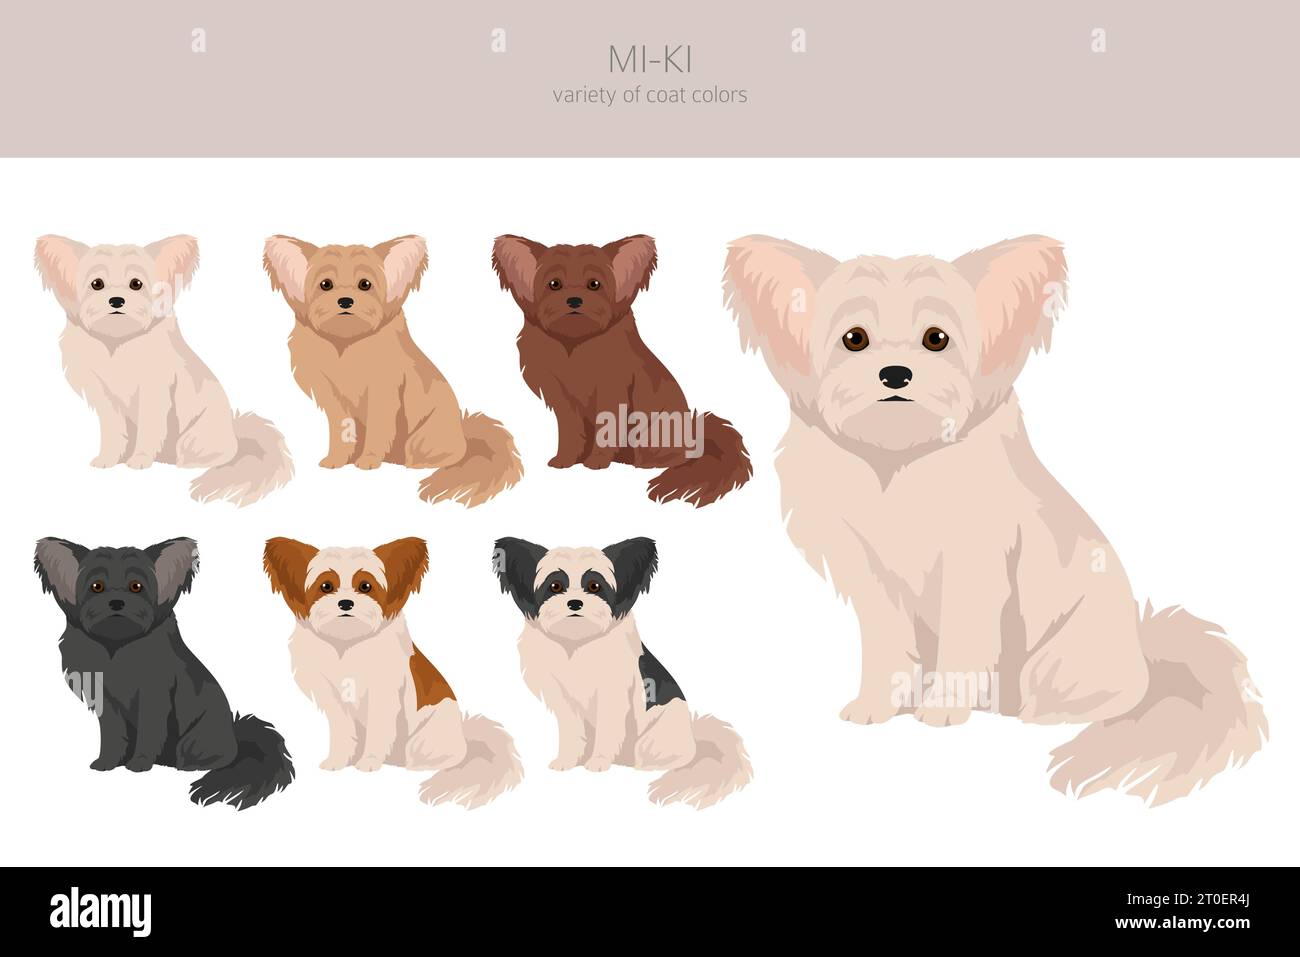 Mi-Ki chien clipart. Toutes les couleurs de manteau définies. Infographie des caractéristiques de toutes les races de chiens. Illustration vectorielle Illustration de Vecteur